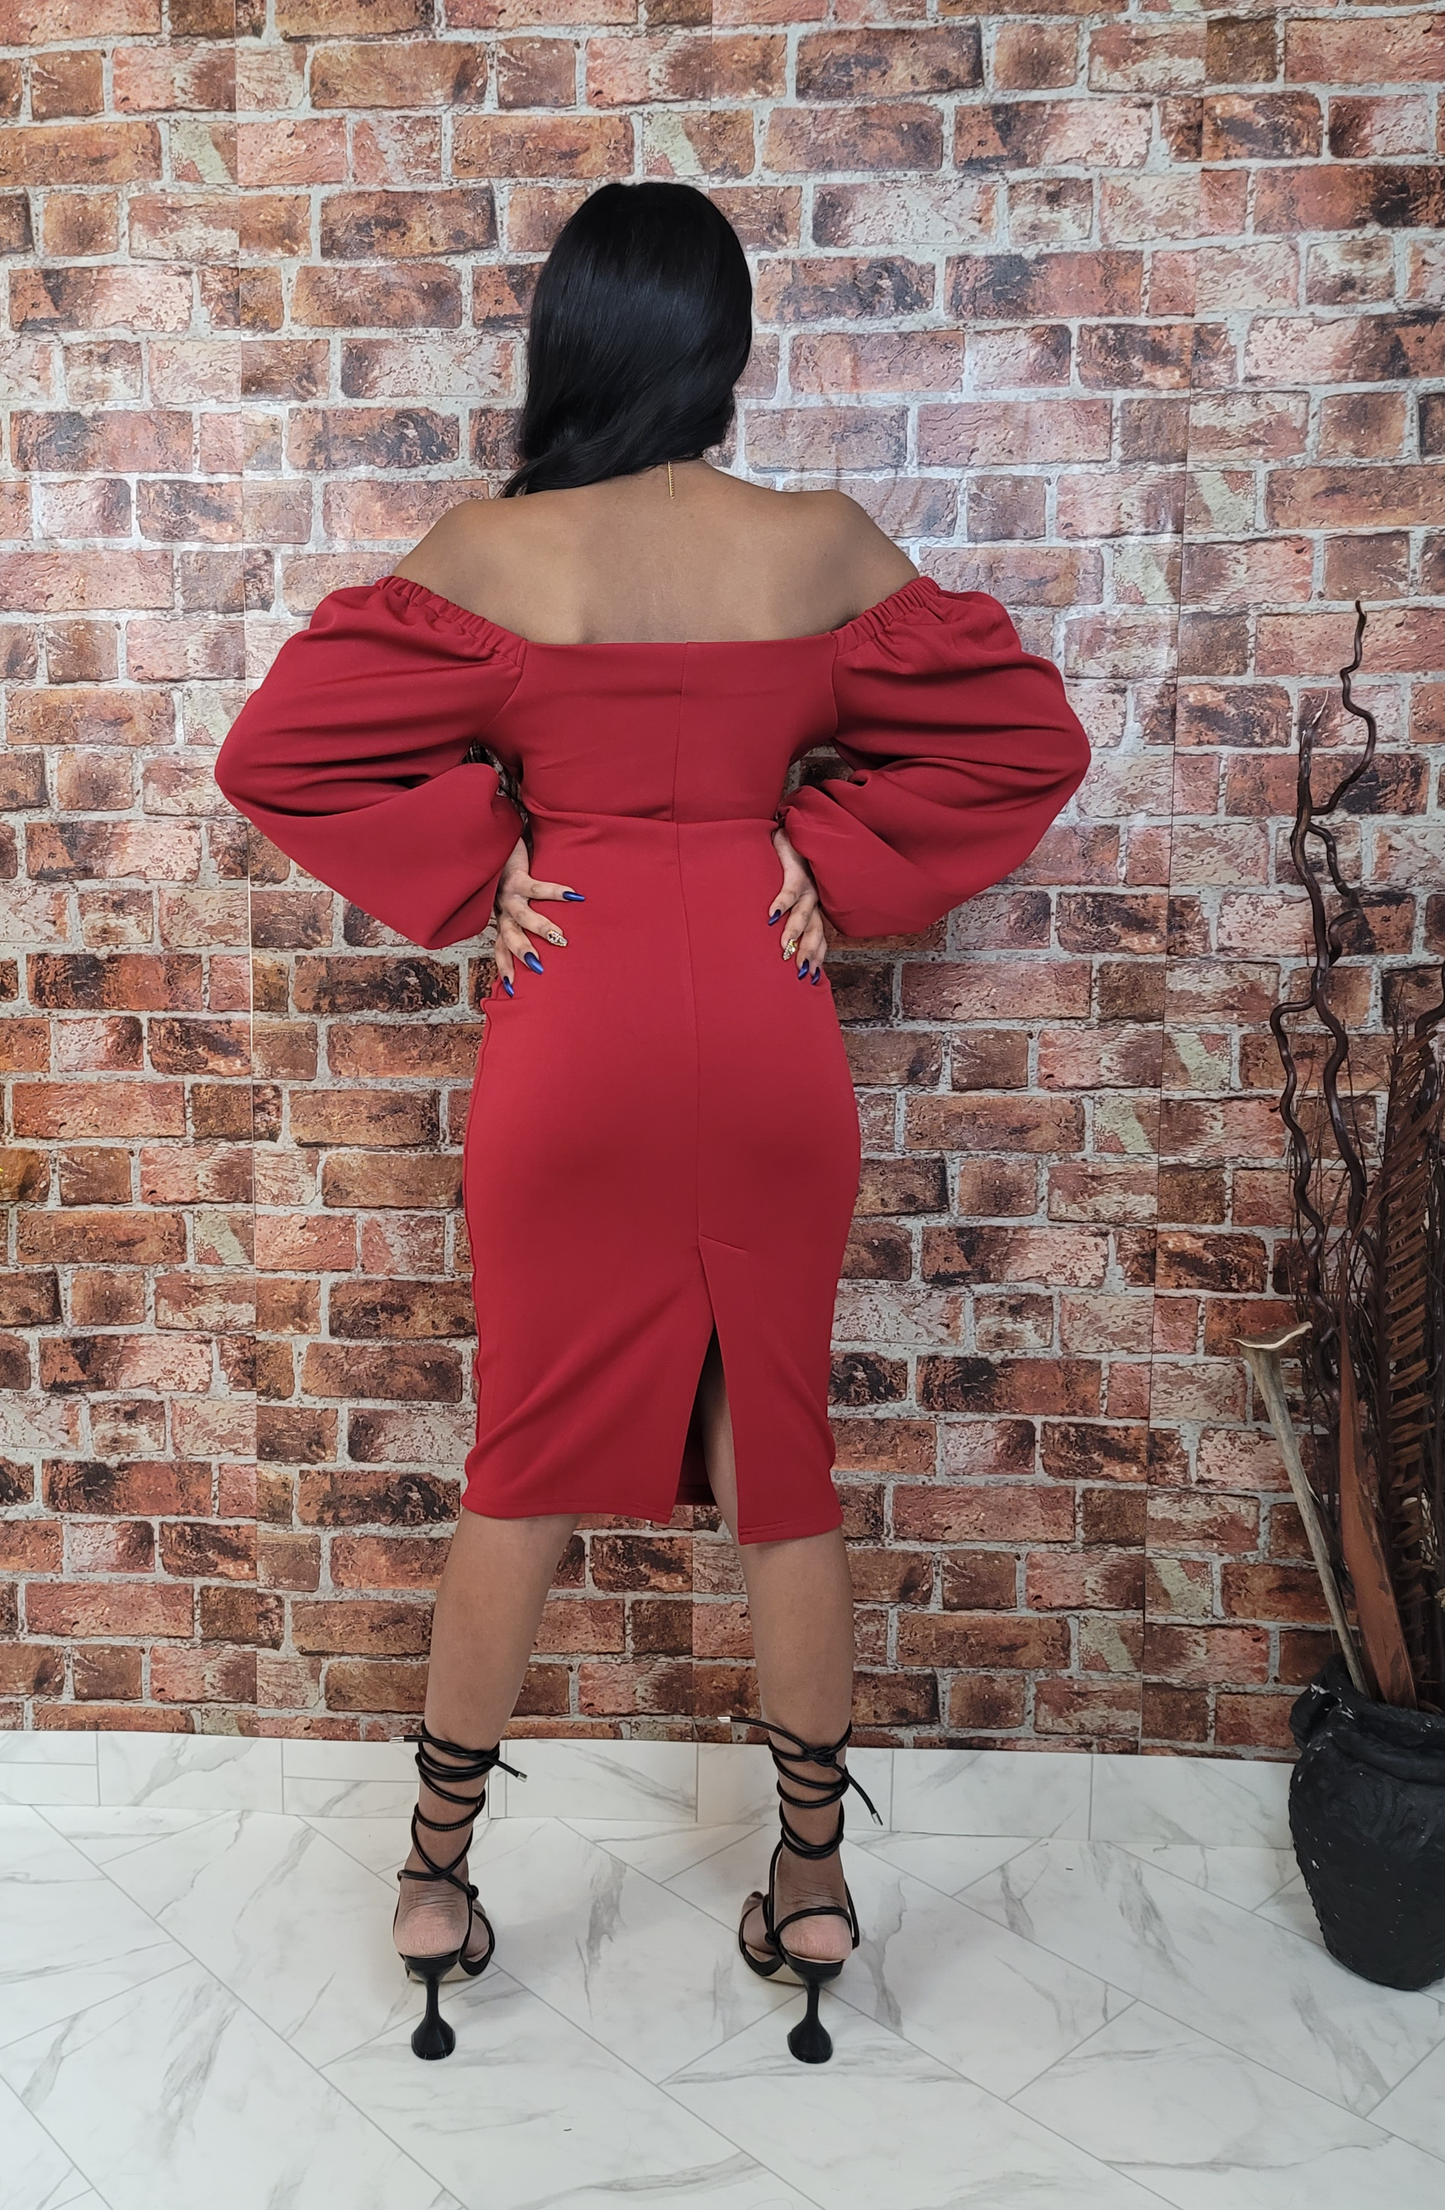 Red Off shoulder Dress